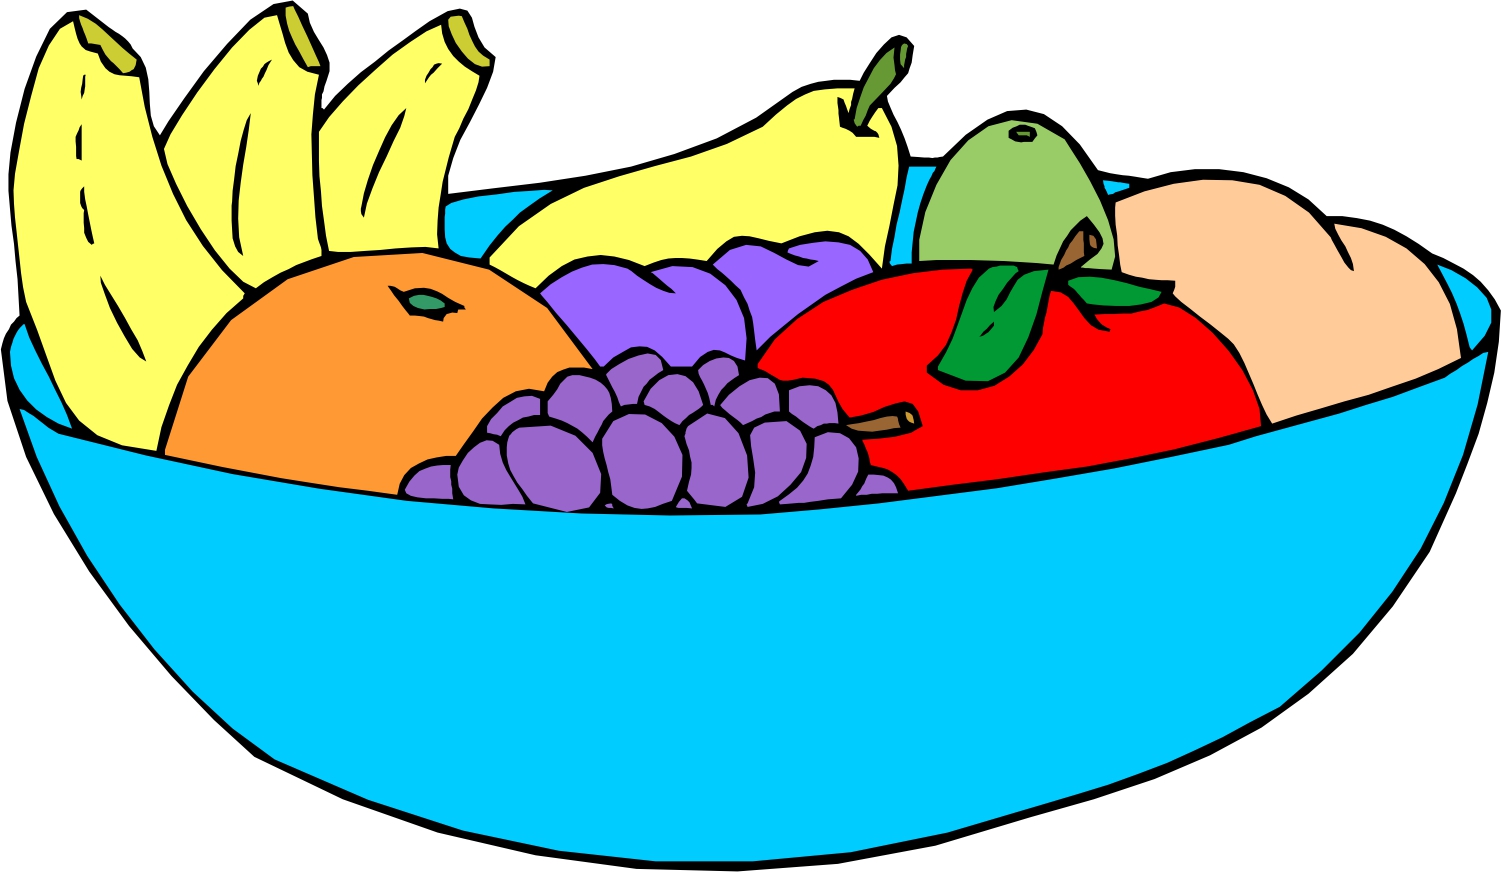 Fruit Basket Clip Art - Cliparts.co